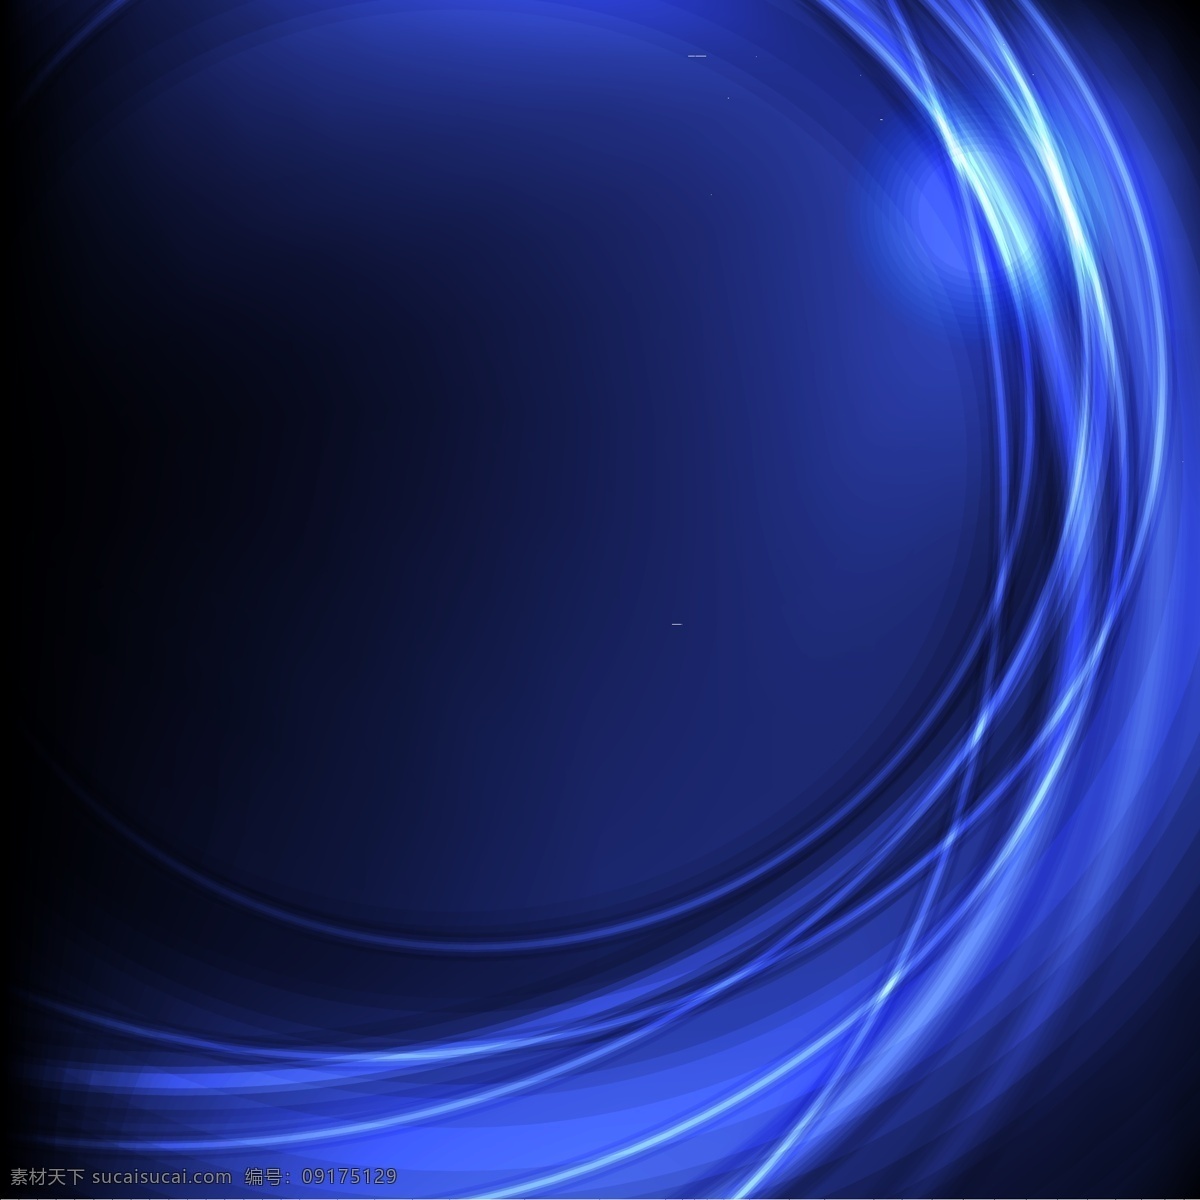 动感 概念 背景 波浪线条 动感背景 格子 圆环 创意 矢量图 创意概念 蓝色弧线 矢量 其他矢量图